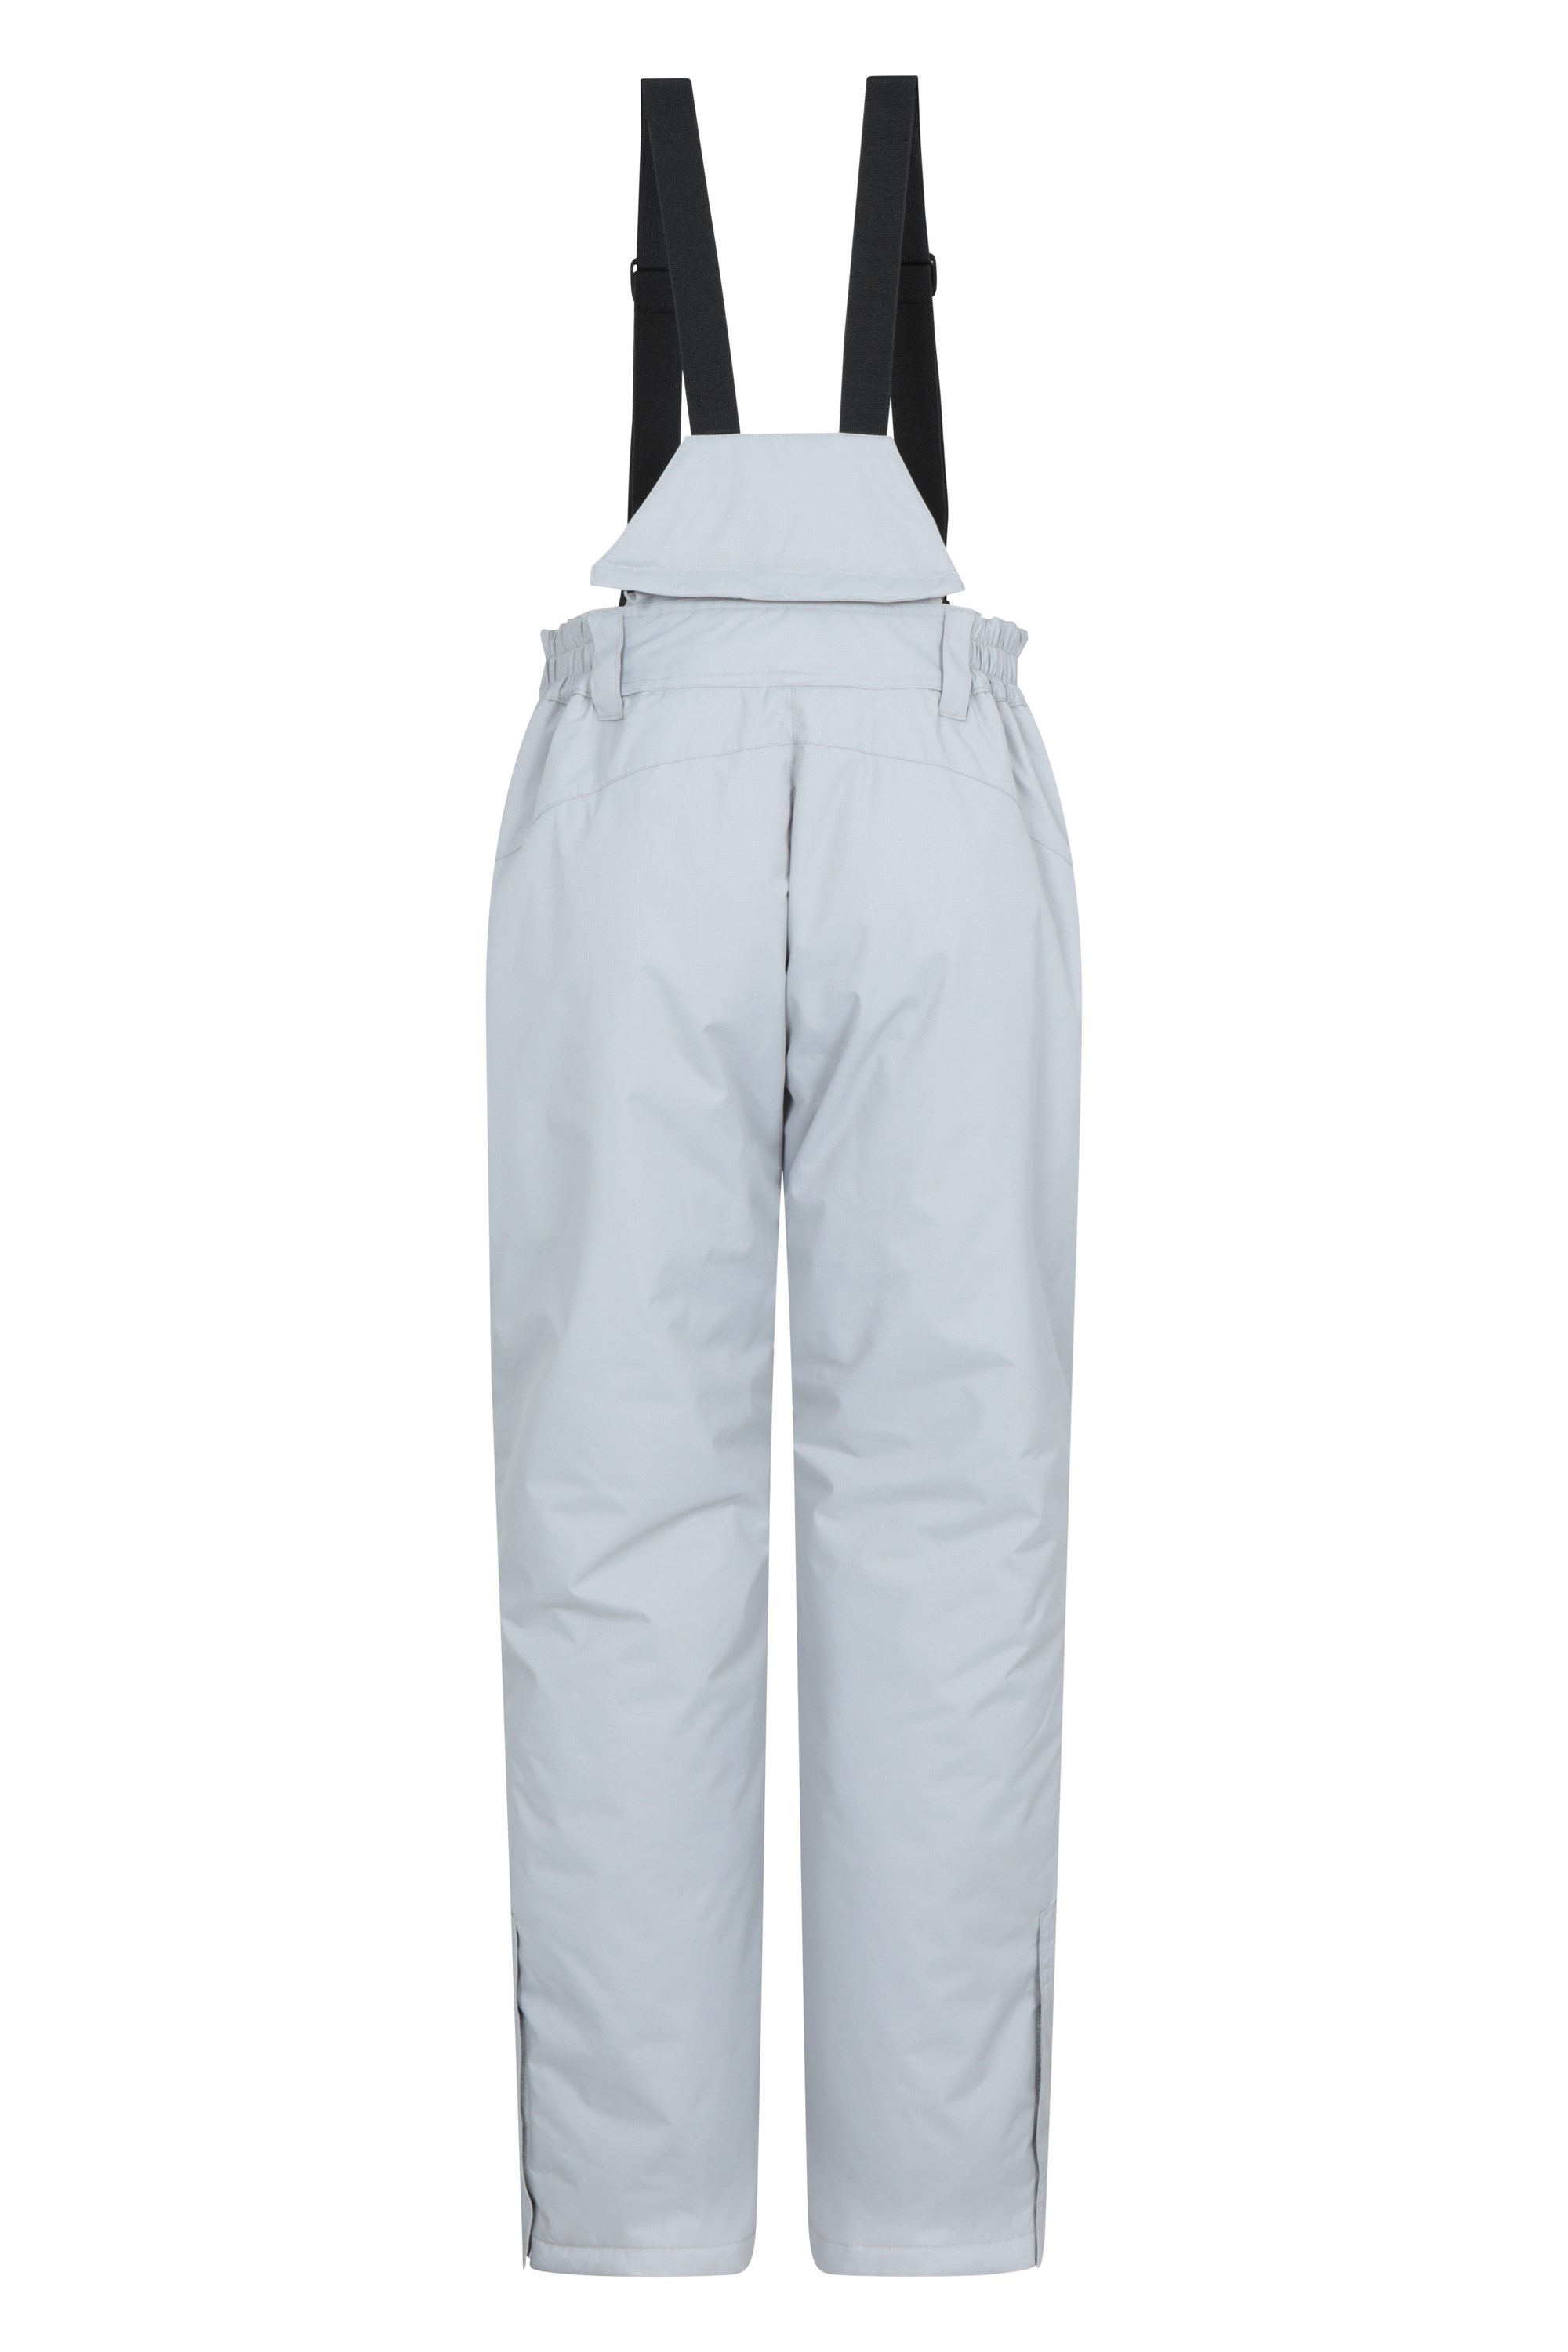 NEW Womens Mountain Warehouse Ski Trousers Salopettes 8 Moon White RRP £59.99 